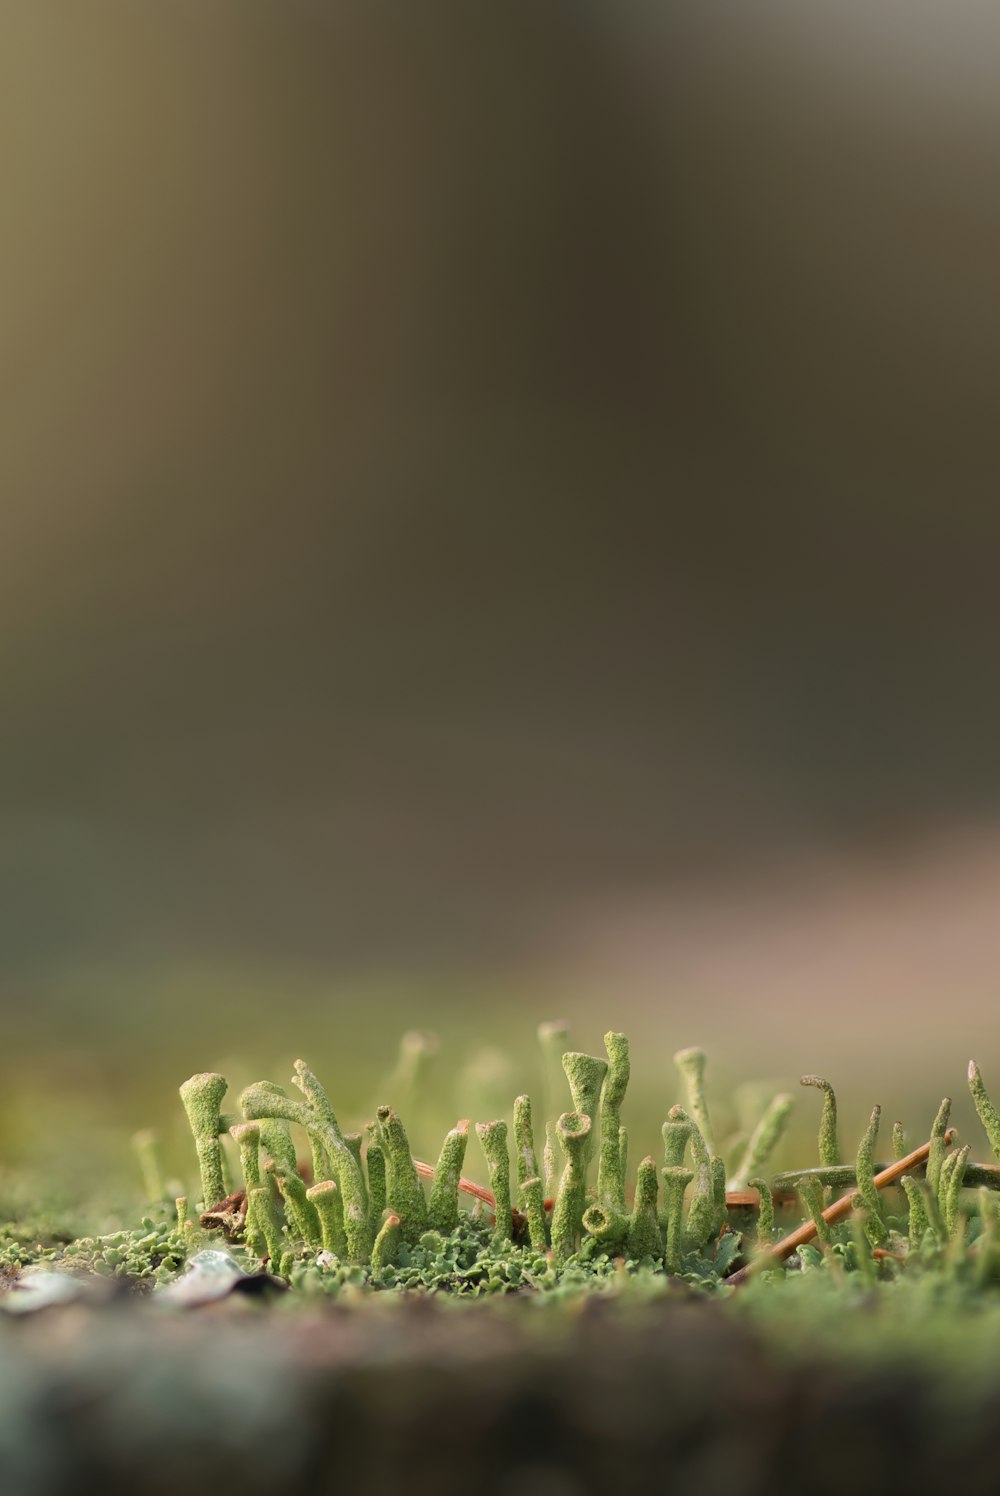 Un primer plano de un musgo que crece en el suelo